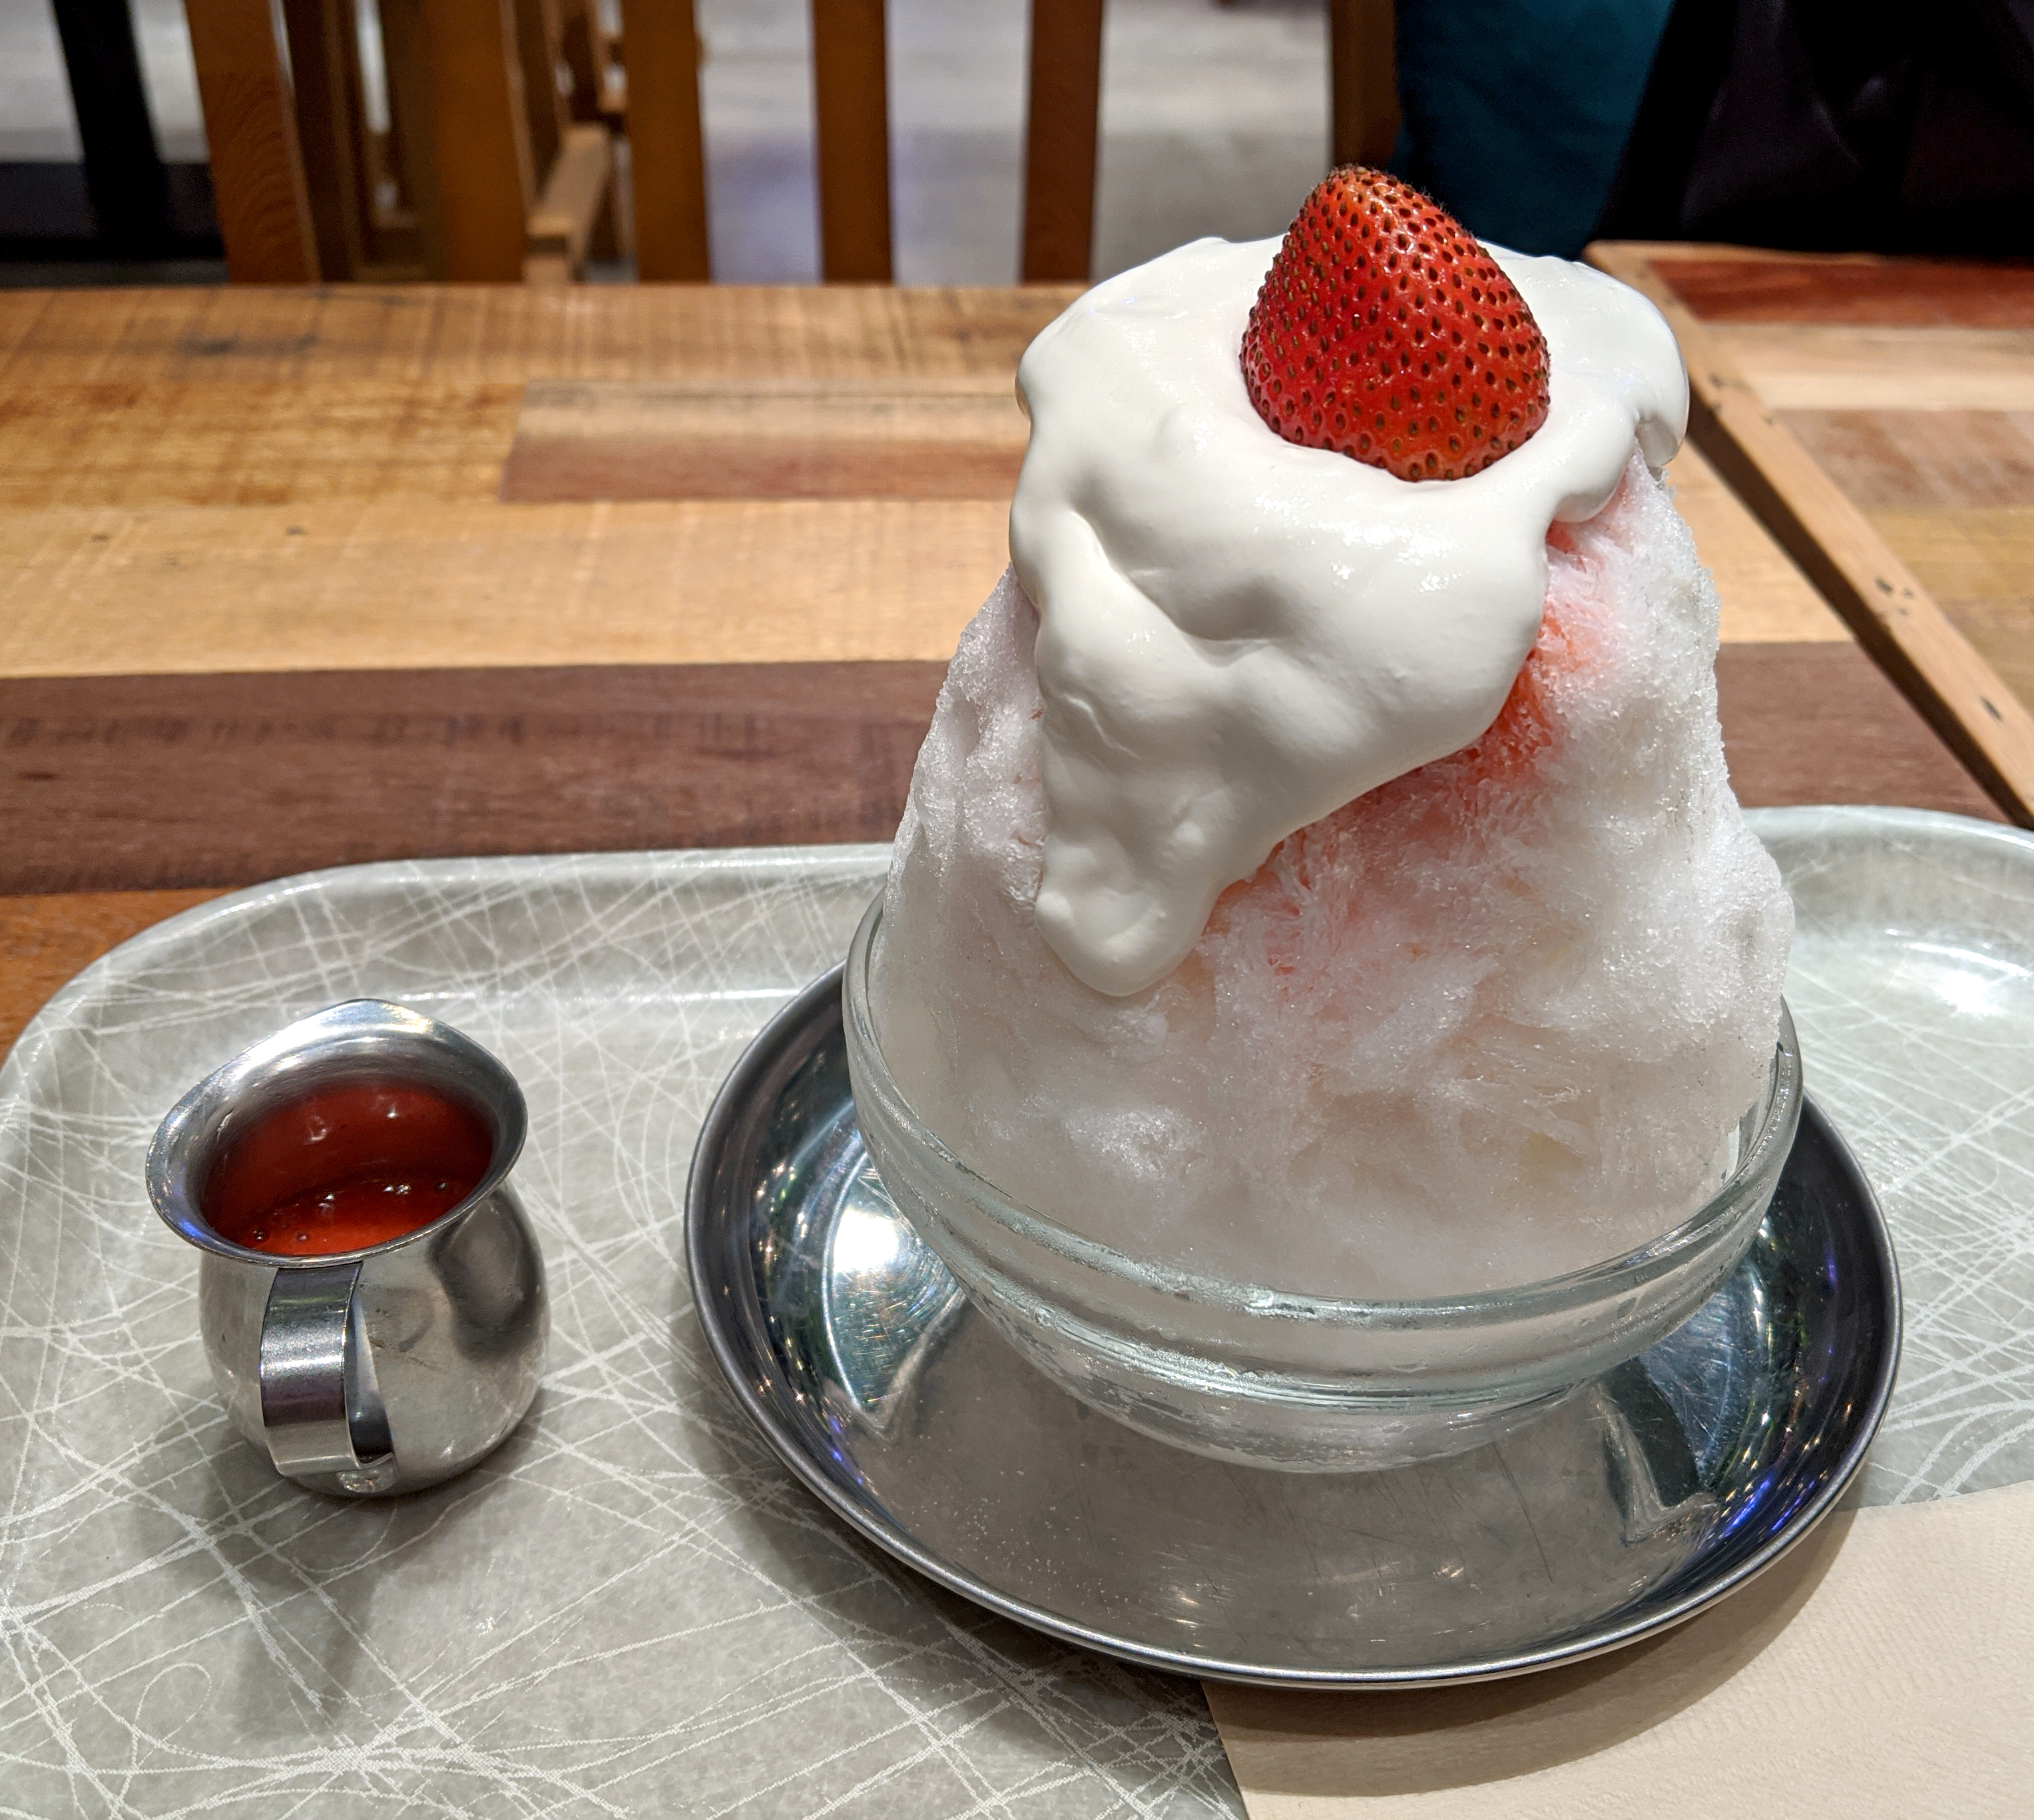 パティシエが作る ケーキのようなかき氷 を出すお店で ショートケーキのかき氷を食べてみた 東京 新宿 フローチェ ロケットニュース24